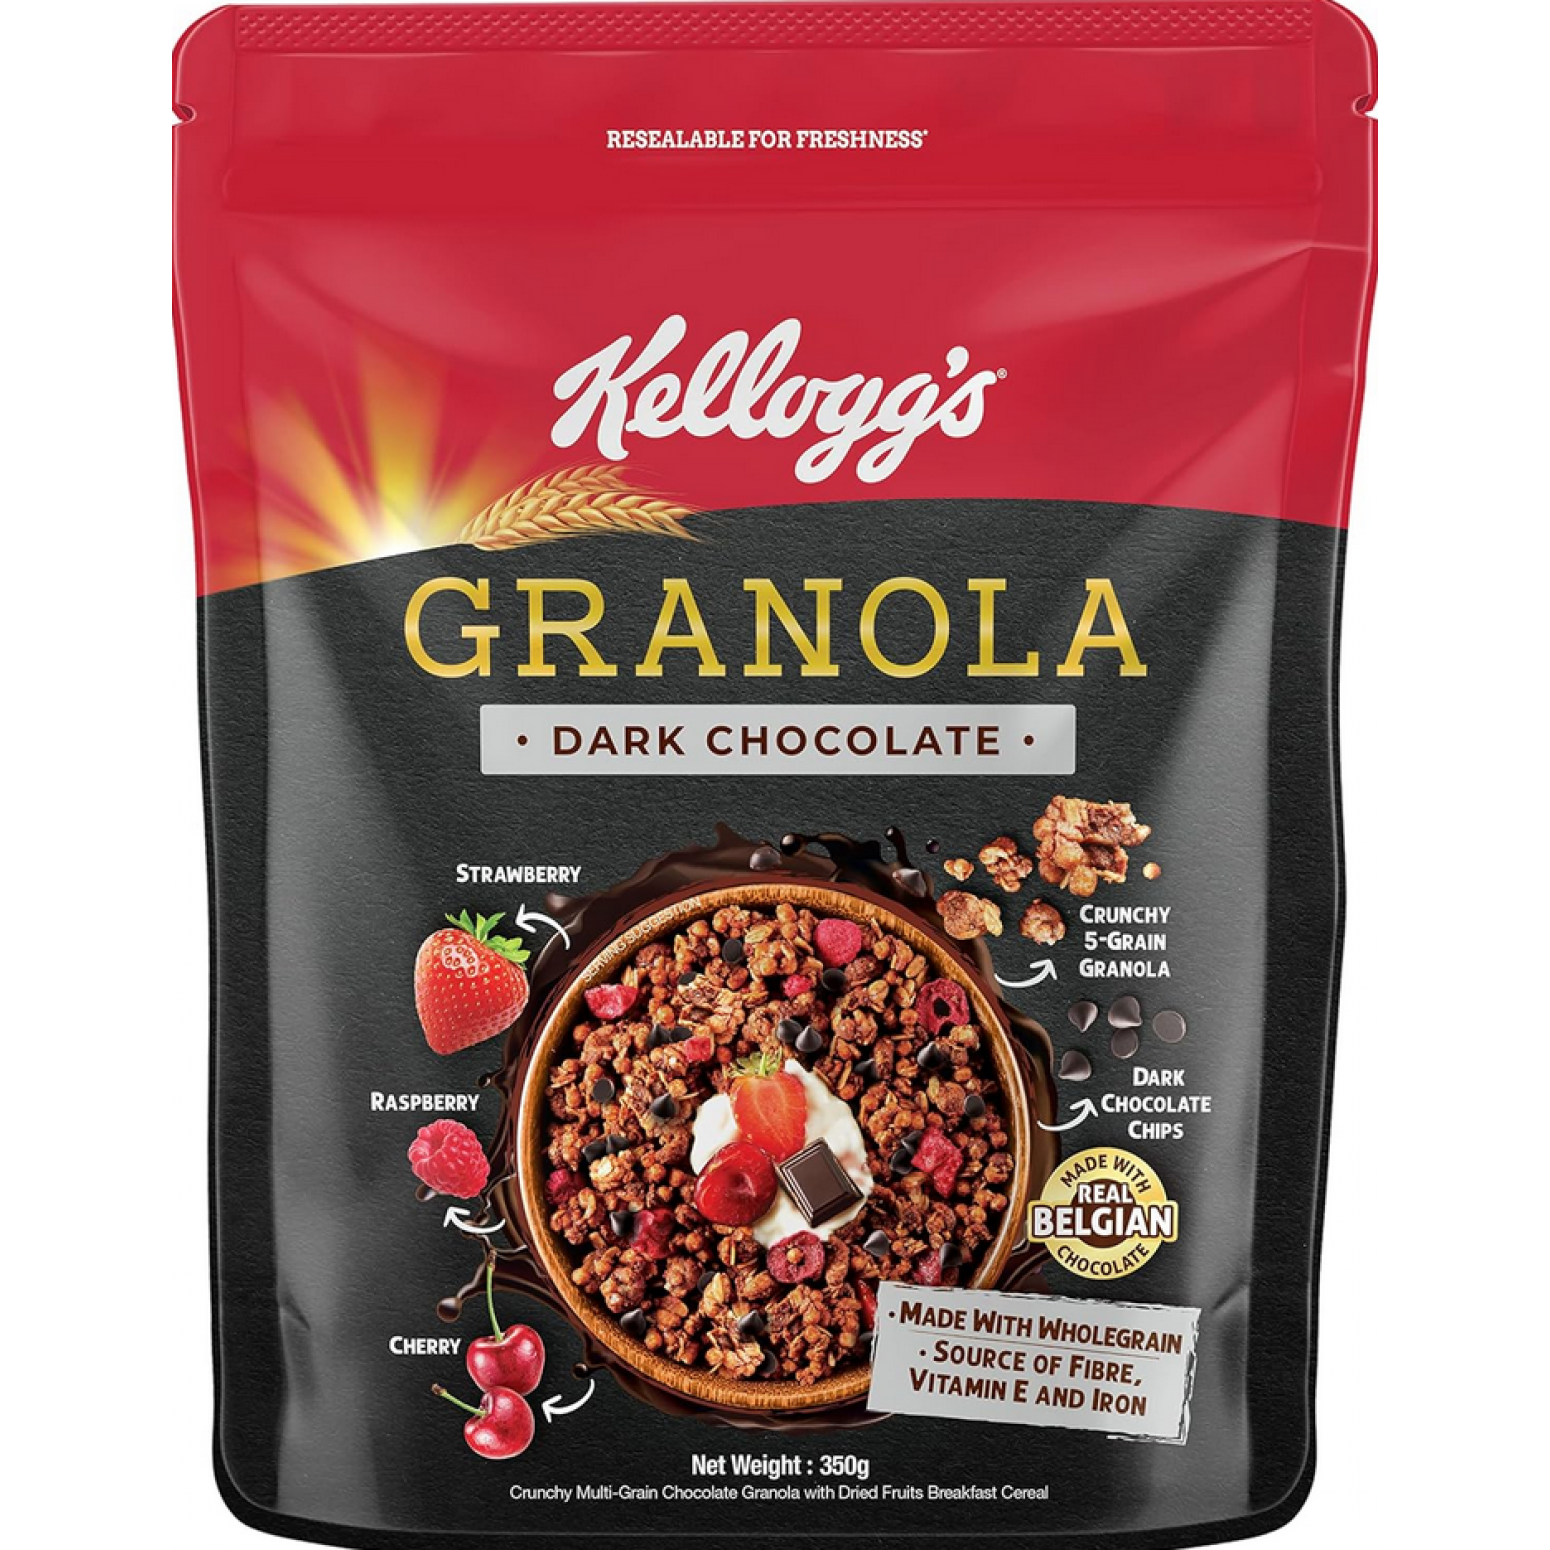 Kellogg's Dark Chocolate Granola 220g.